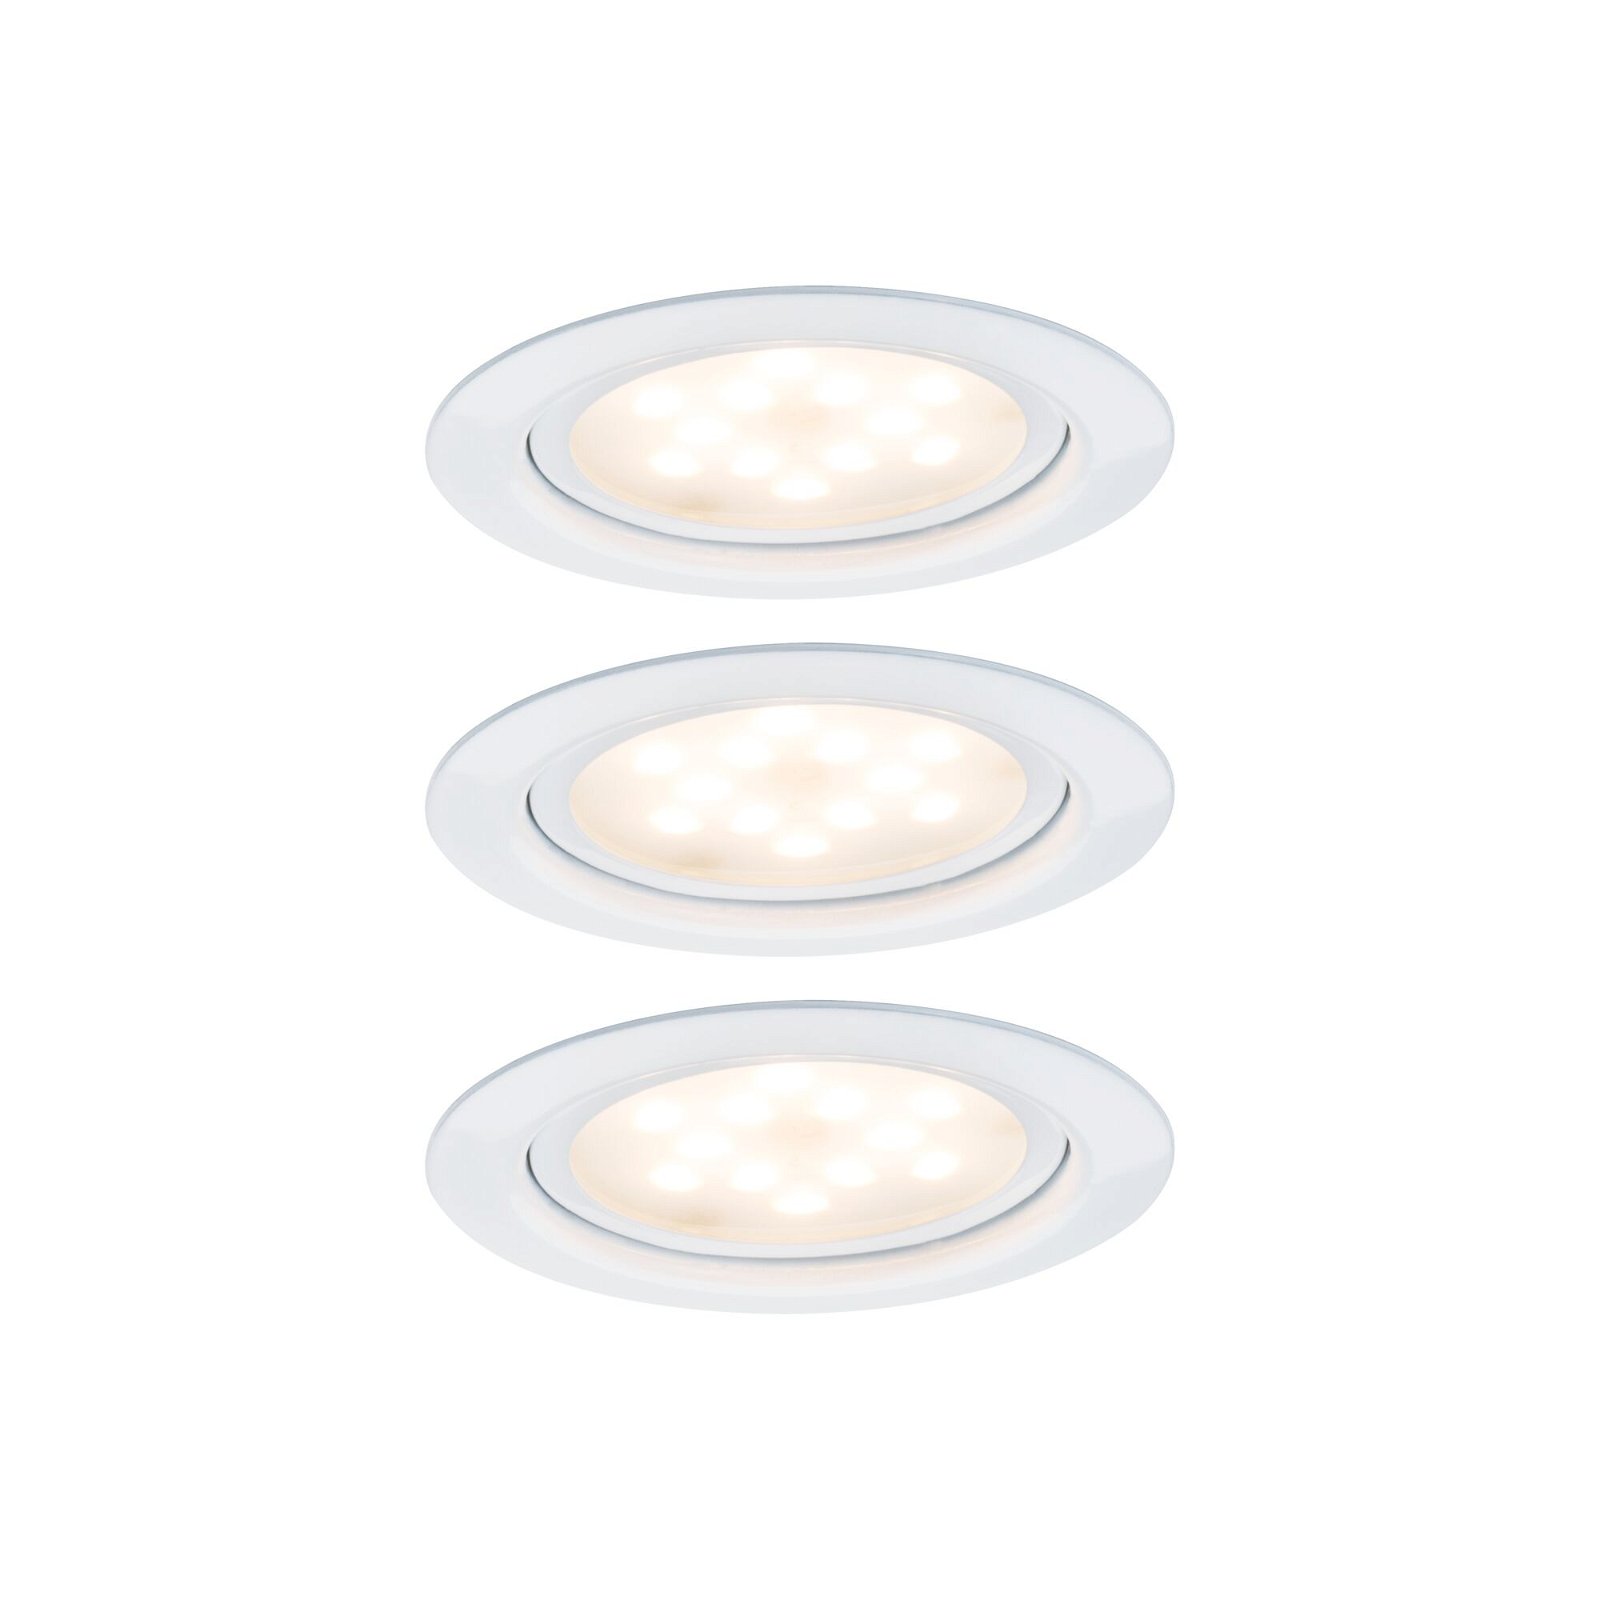 LED Möbeleinbauleuchten Micro Line 3er-Set rund 65mm 3x4,5W 3x300lm 230V 2700K Weiß